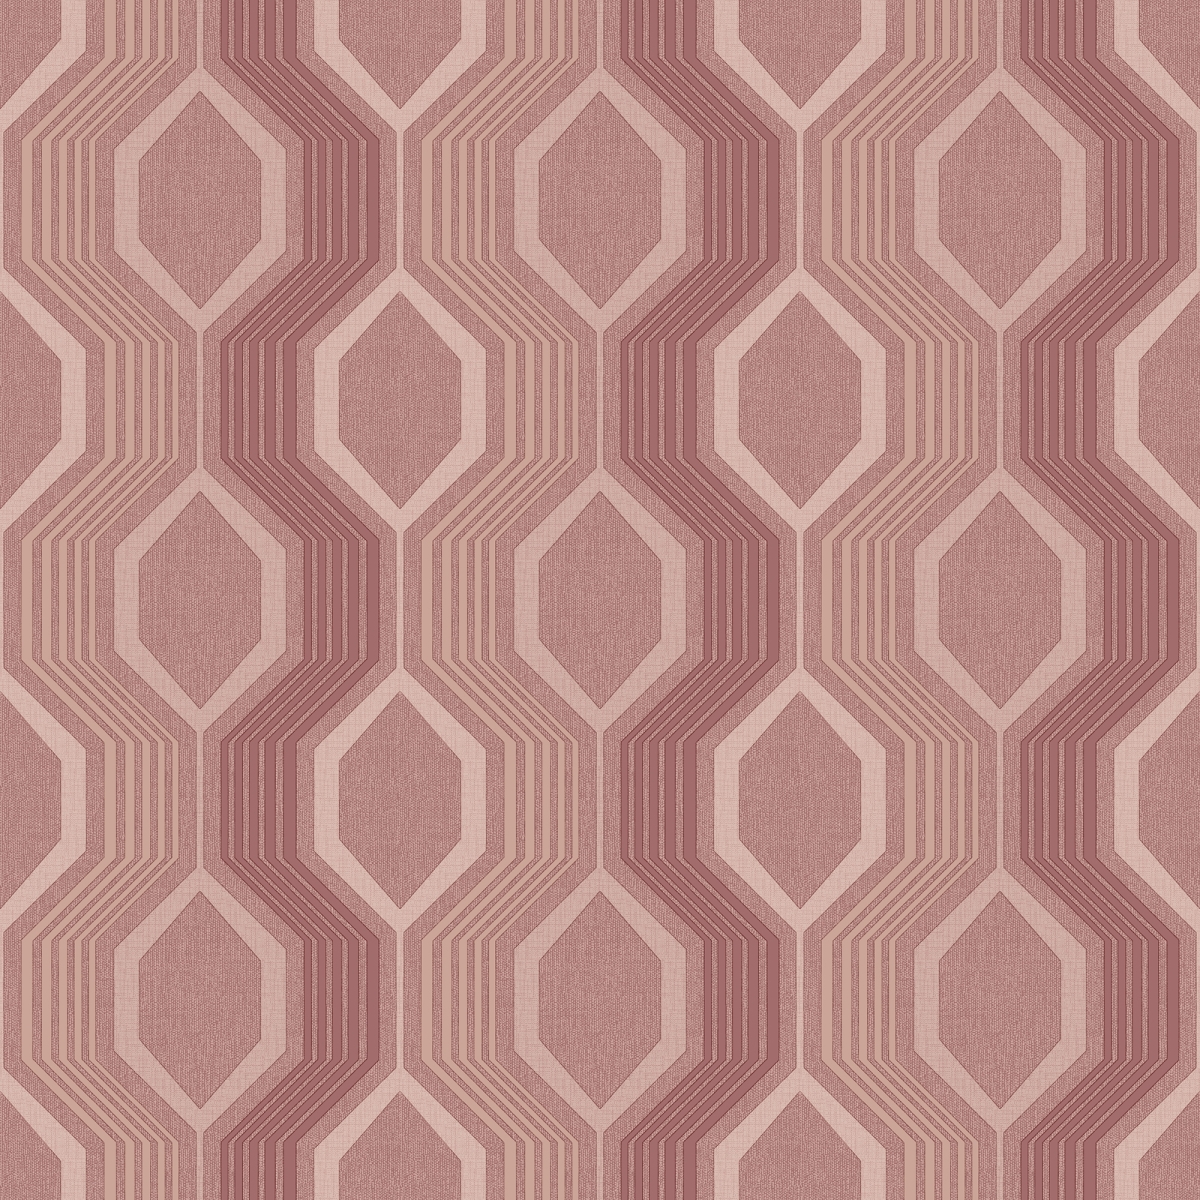 904906 Hexagon Dusky Non-woven Wallpaper, Pink